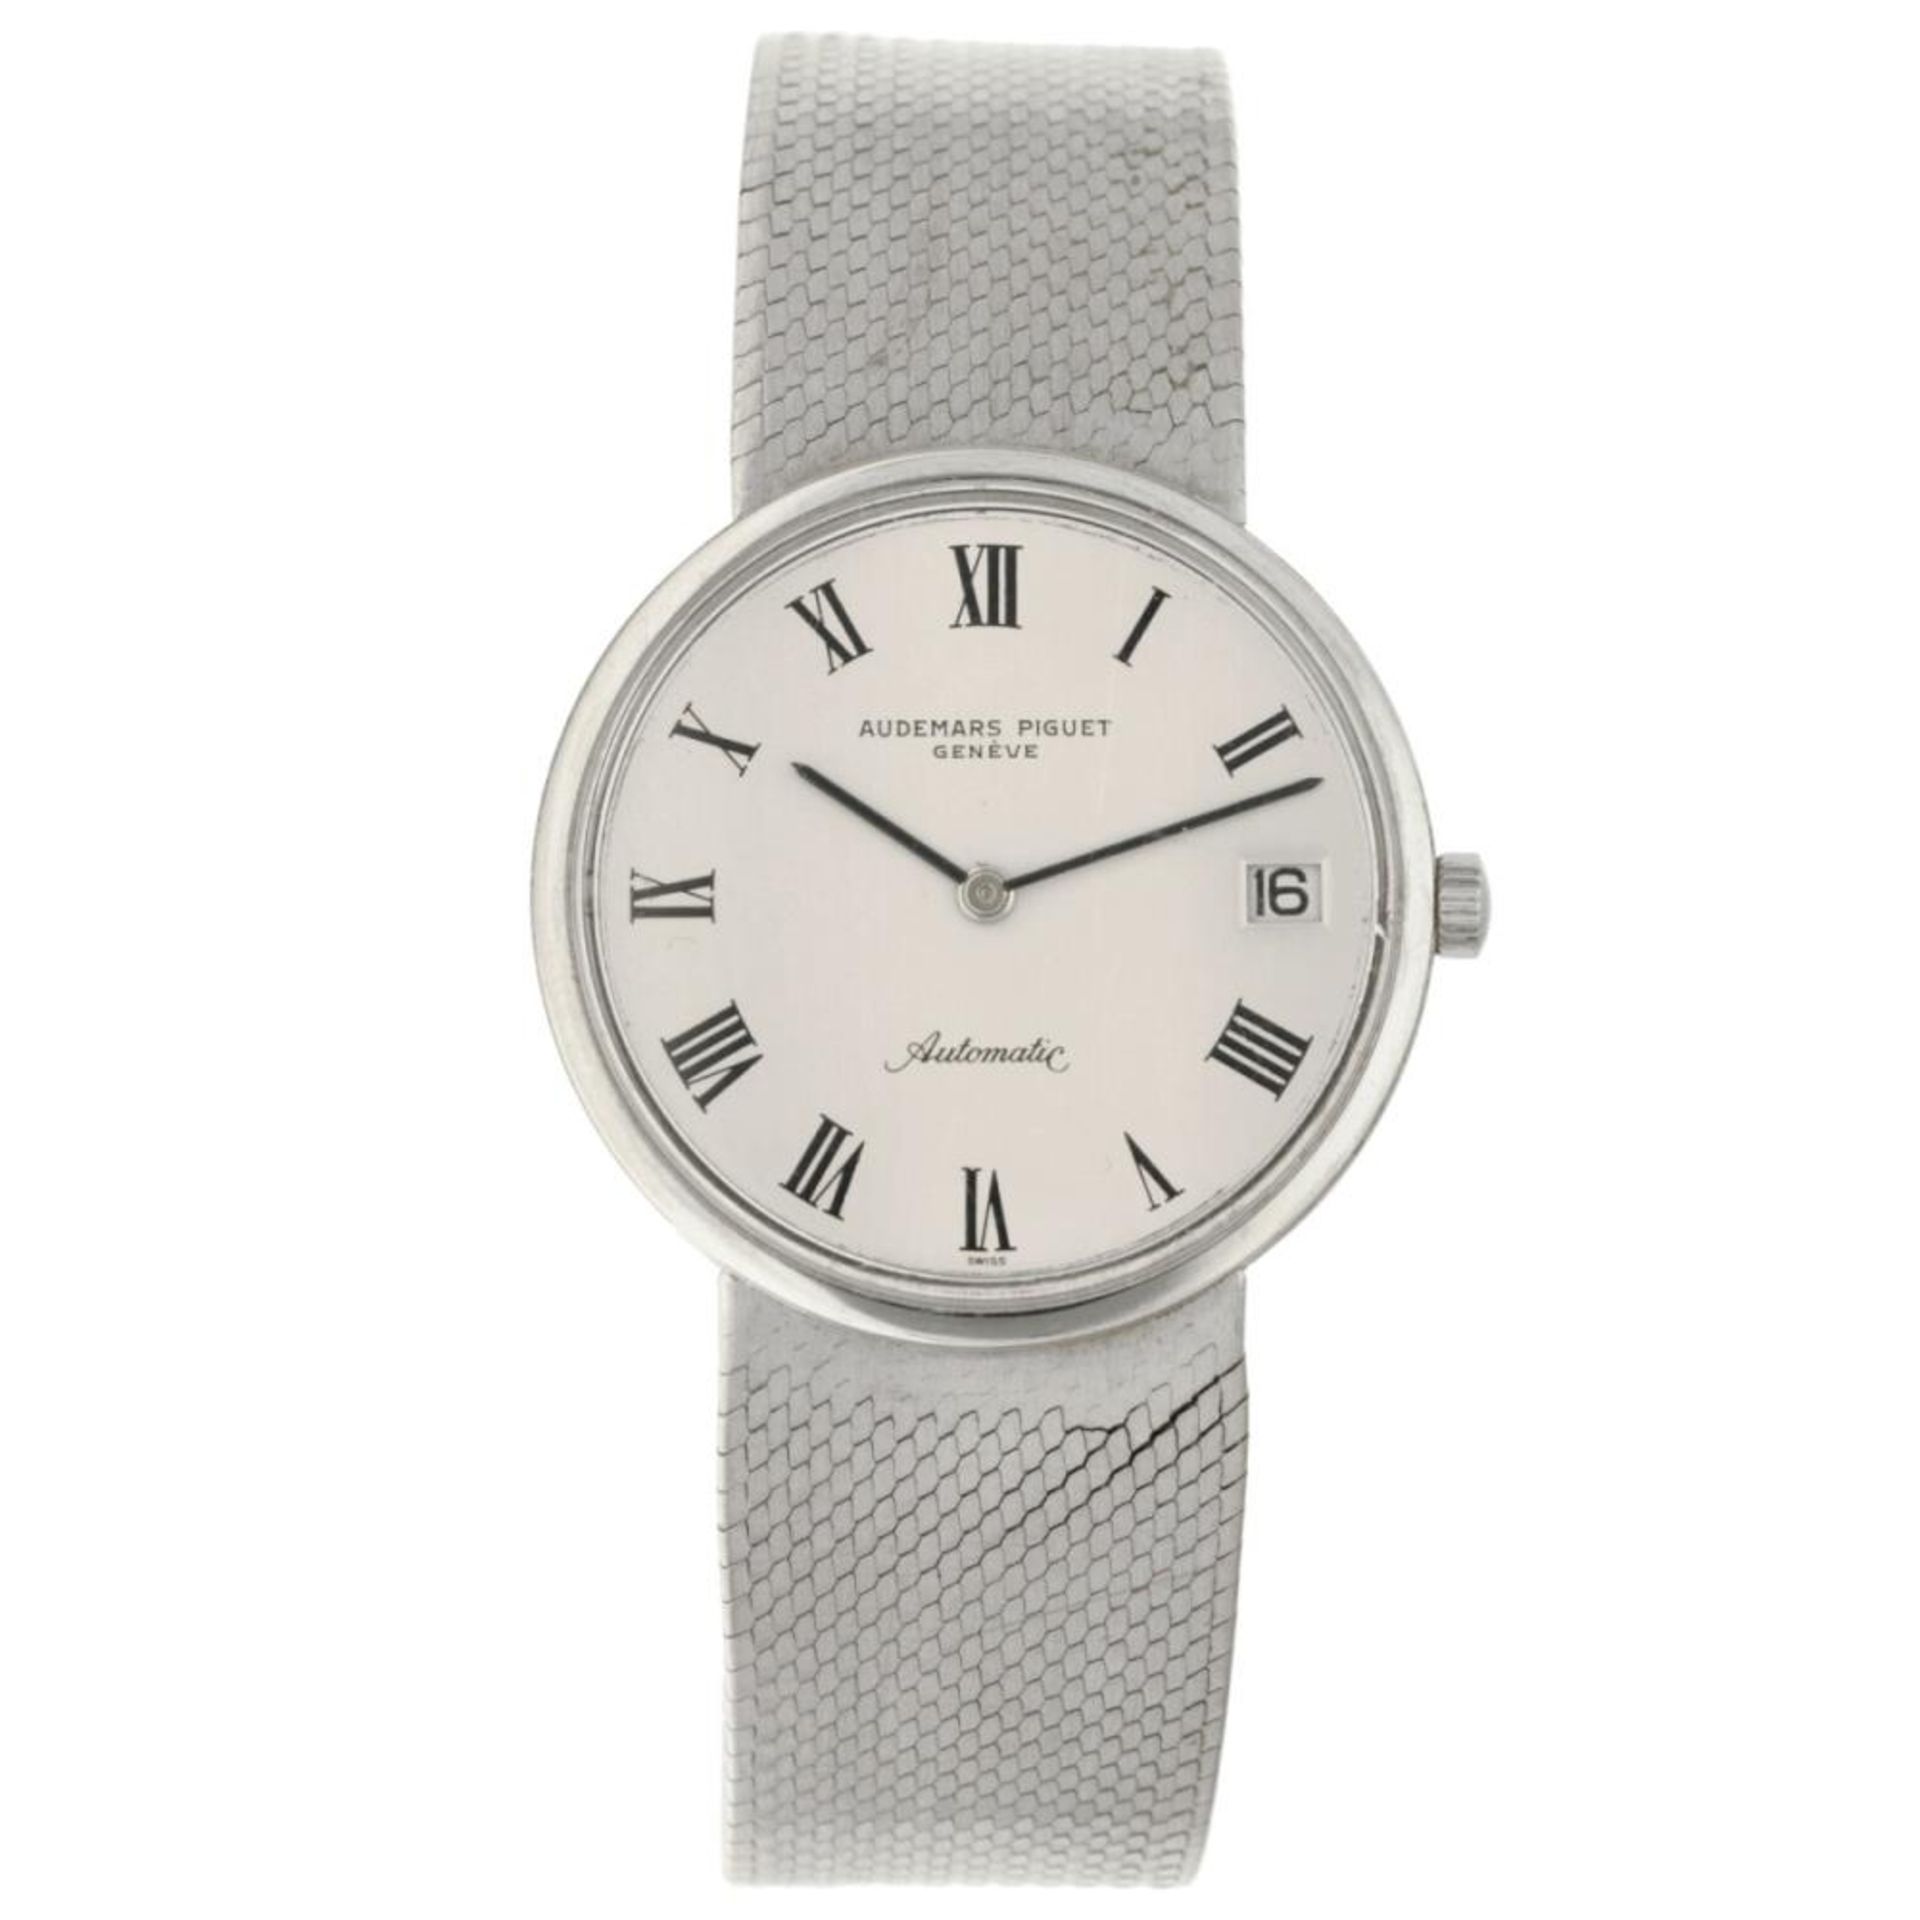 Audemars Piguet 84016 - Men's watch - approx. 1967.